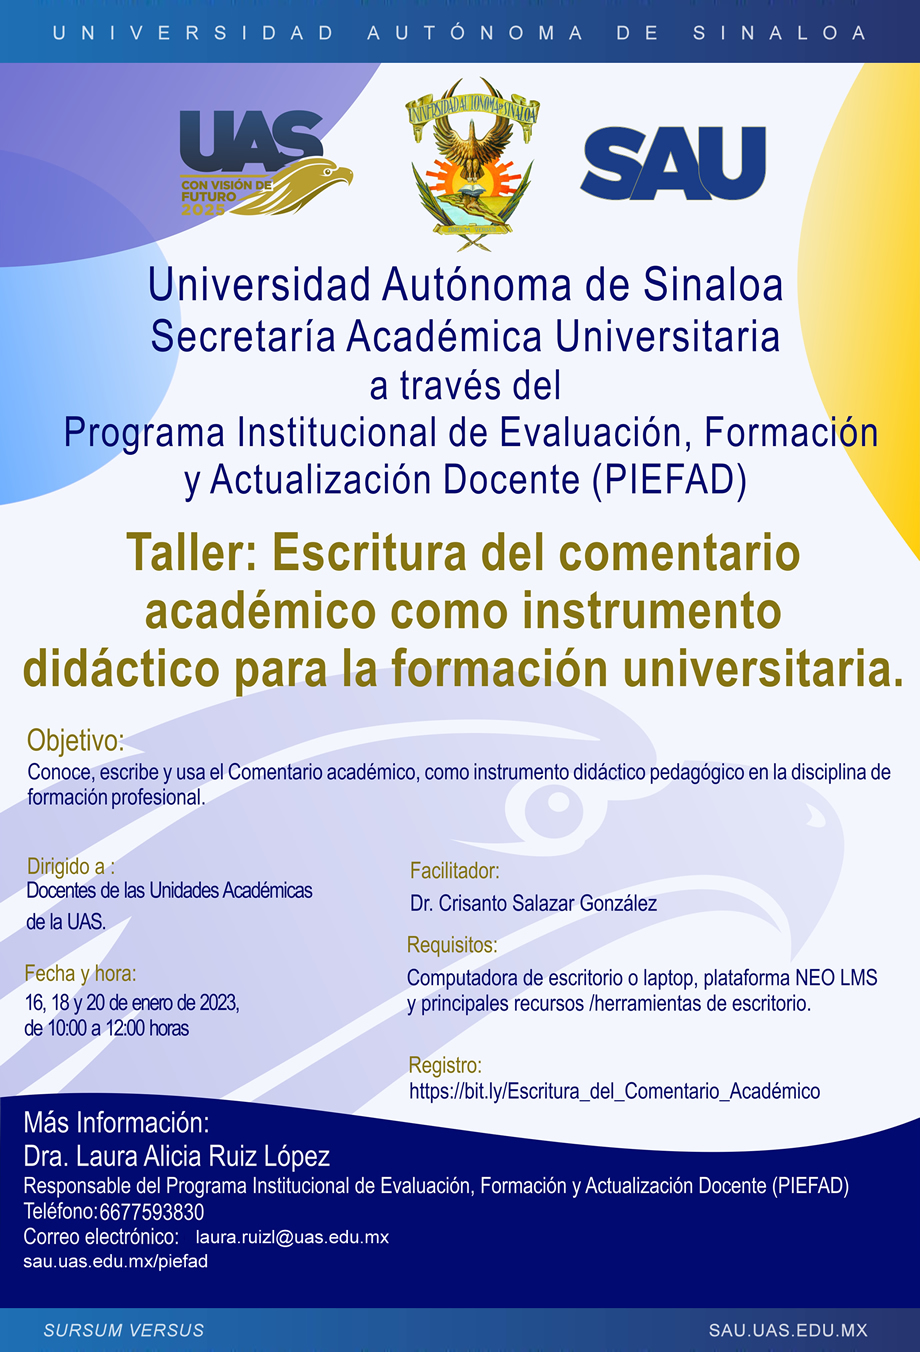 Taller: Escritura del comentario académico como instrumento didáctico para la formación universitaria 2022-2023-2